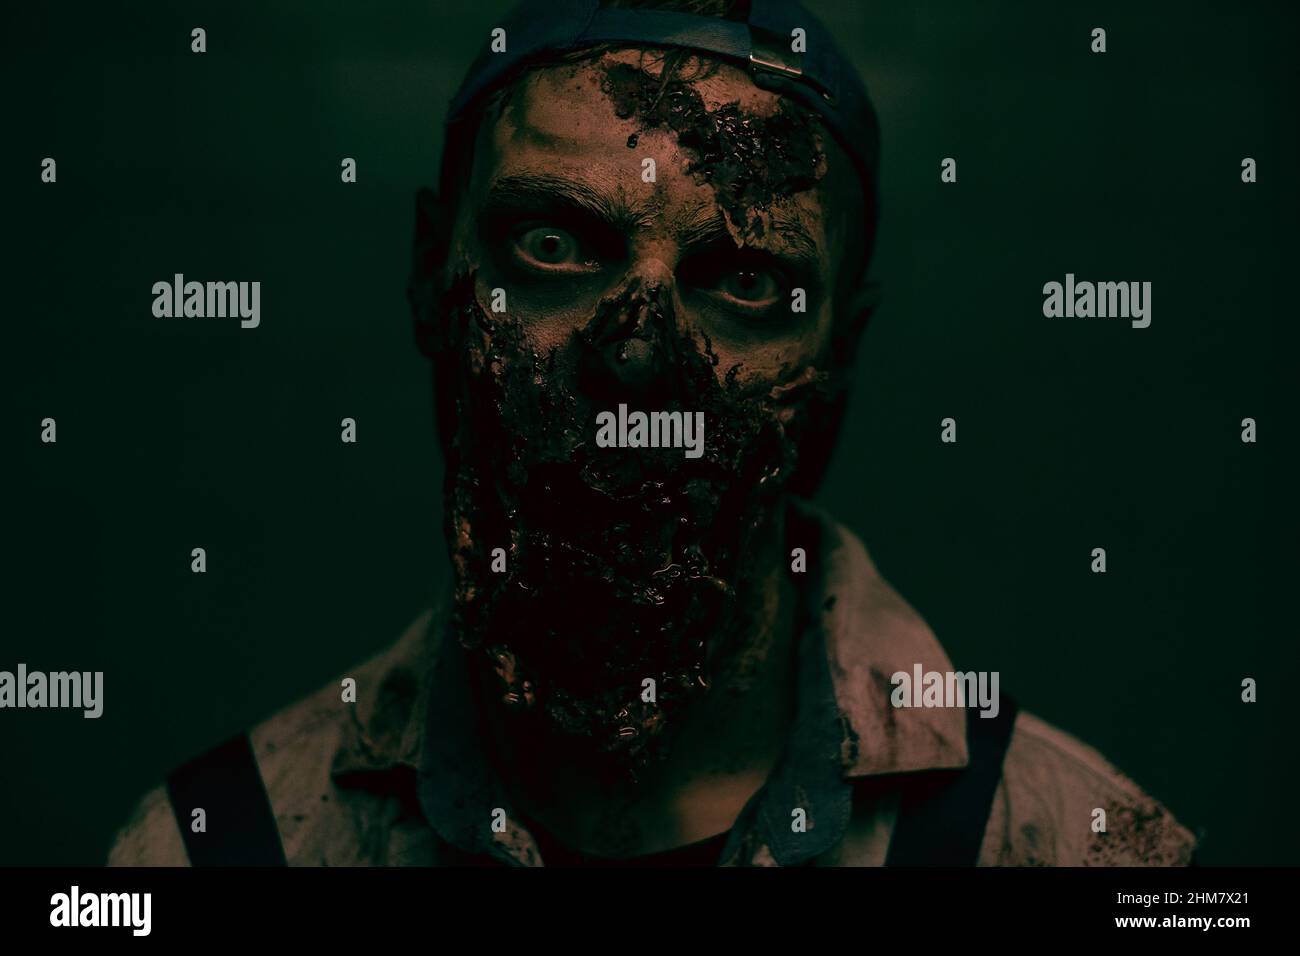 Primo piano di zombie creepy con volto sanguinoso guardando la fotocamera in oscuro horror impostazione, copia spazio Foto Stock